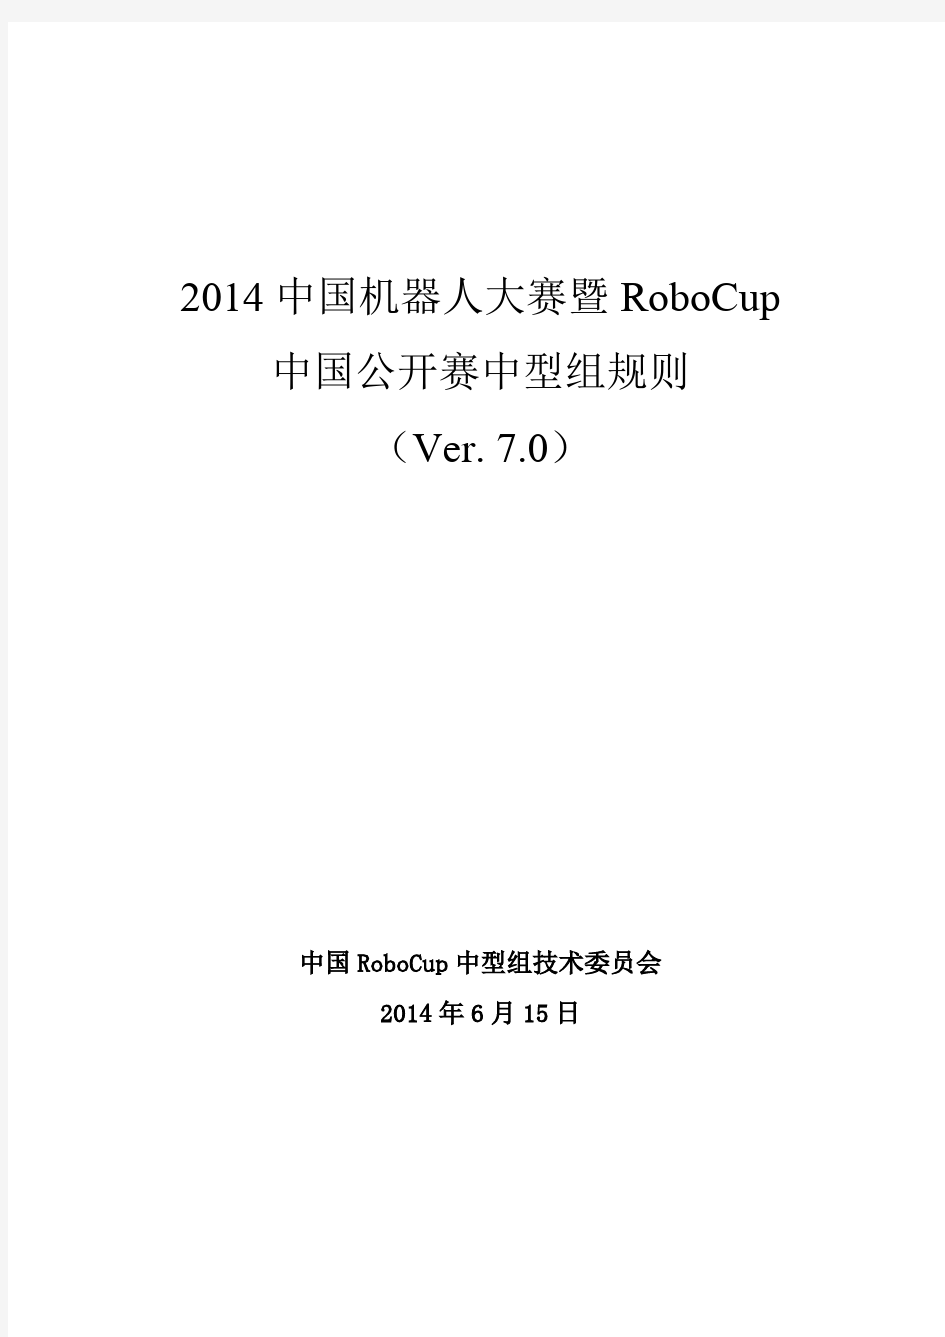 2014中国机器人大赛暨RoboCup中国公开赛中型组规则(7.0版)